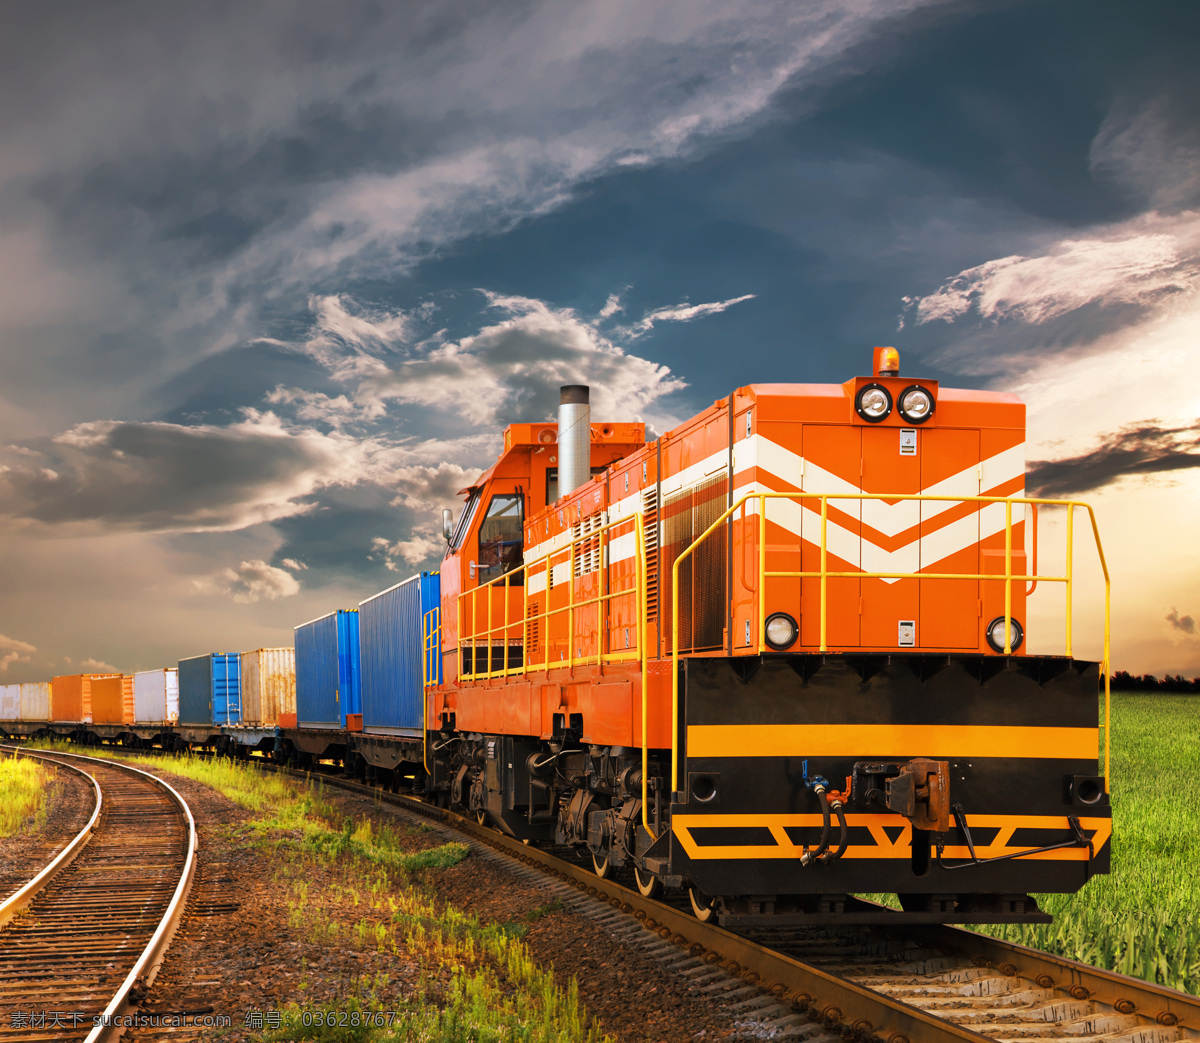 货运列车 货运火车 货运 列车 火车 火车头 铁路运输 现代科技 交通工具